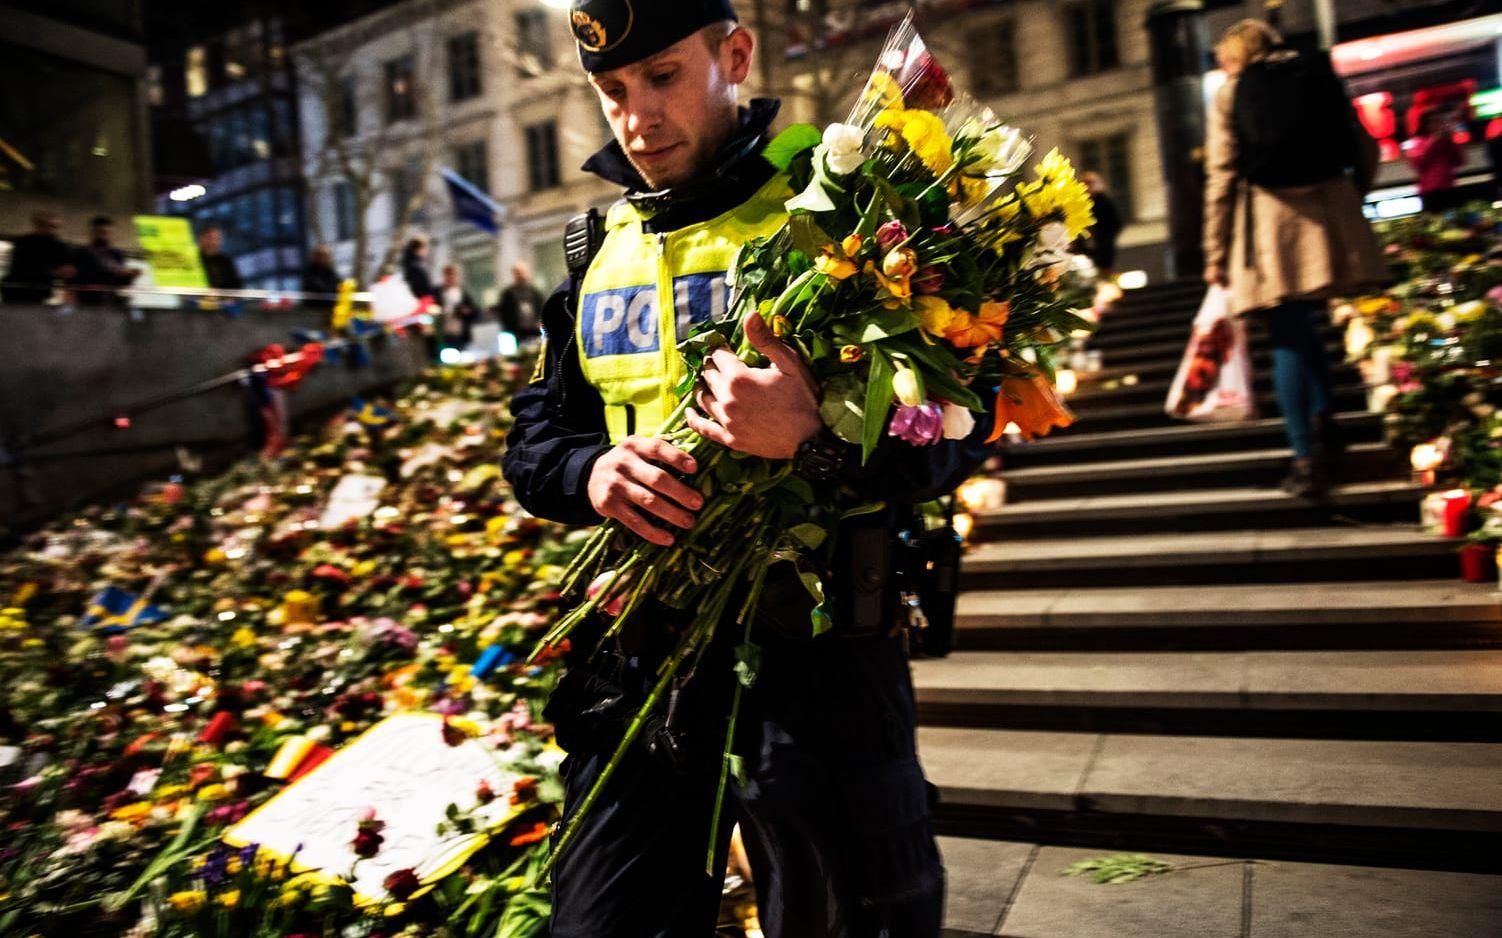 Polisen David placerade blommorna han och kollegan fått på Sergels torgs trappa. Bild: Stefan Berg.
